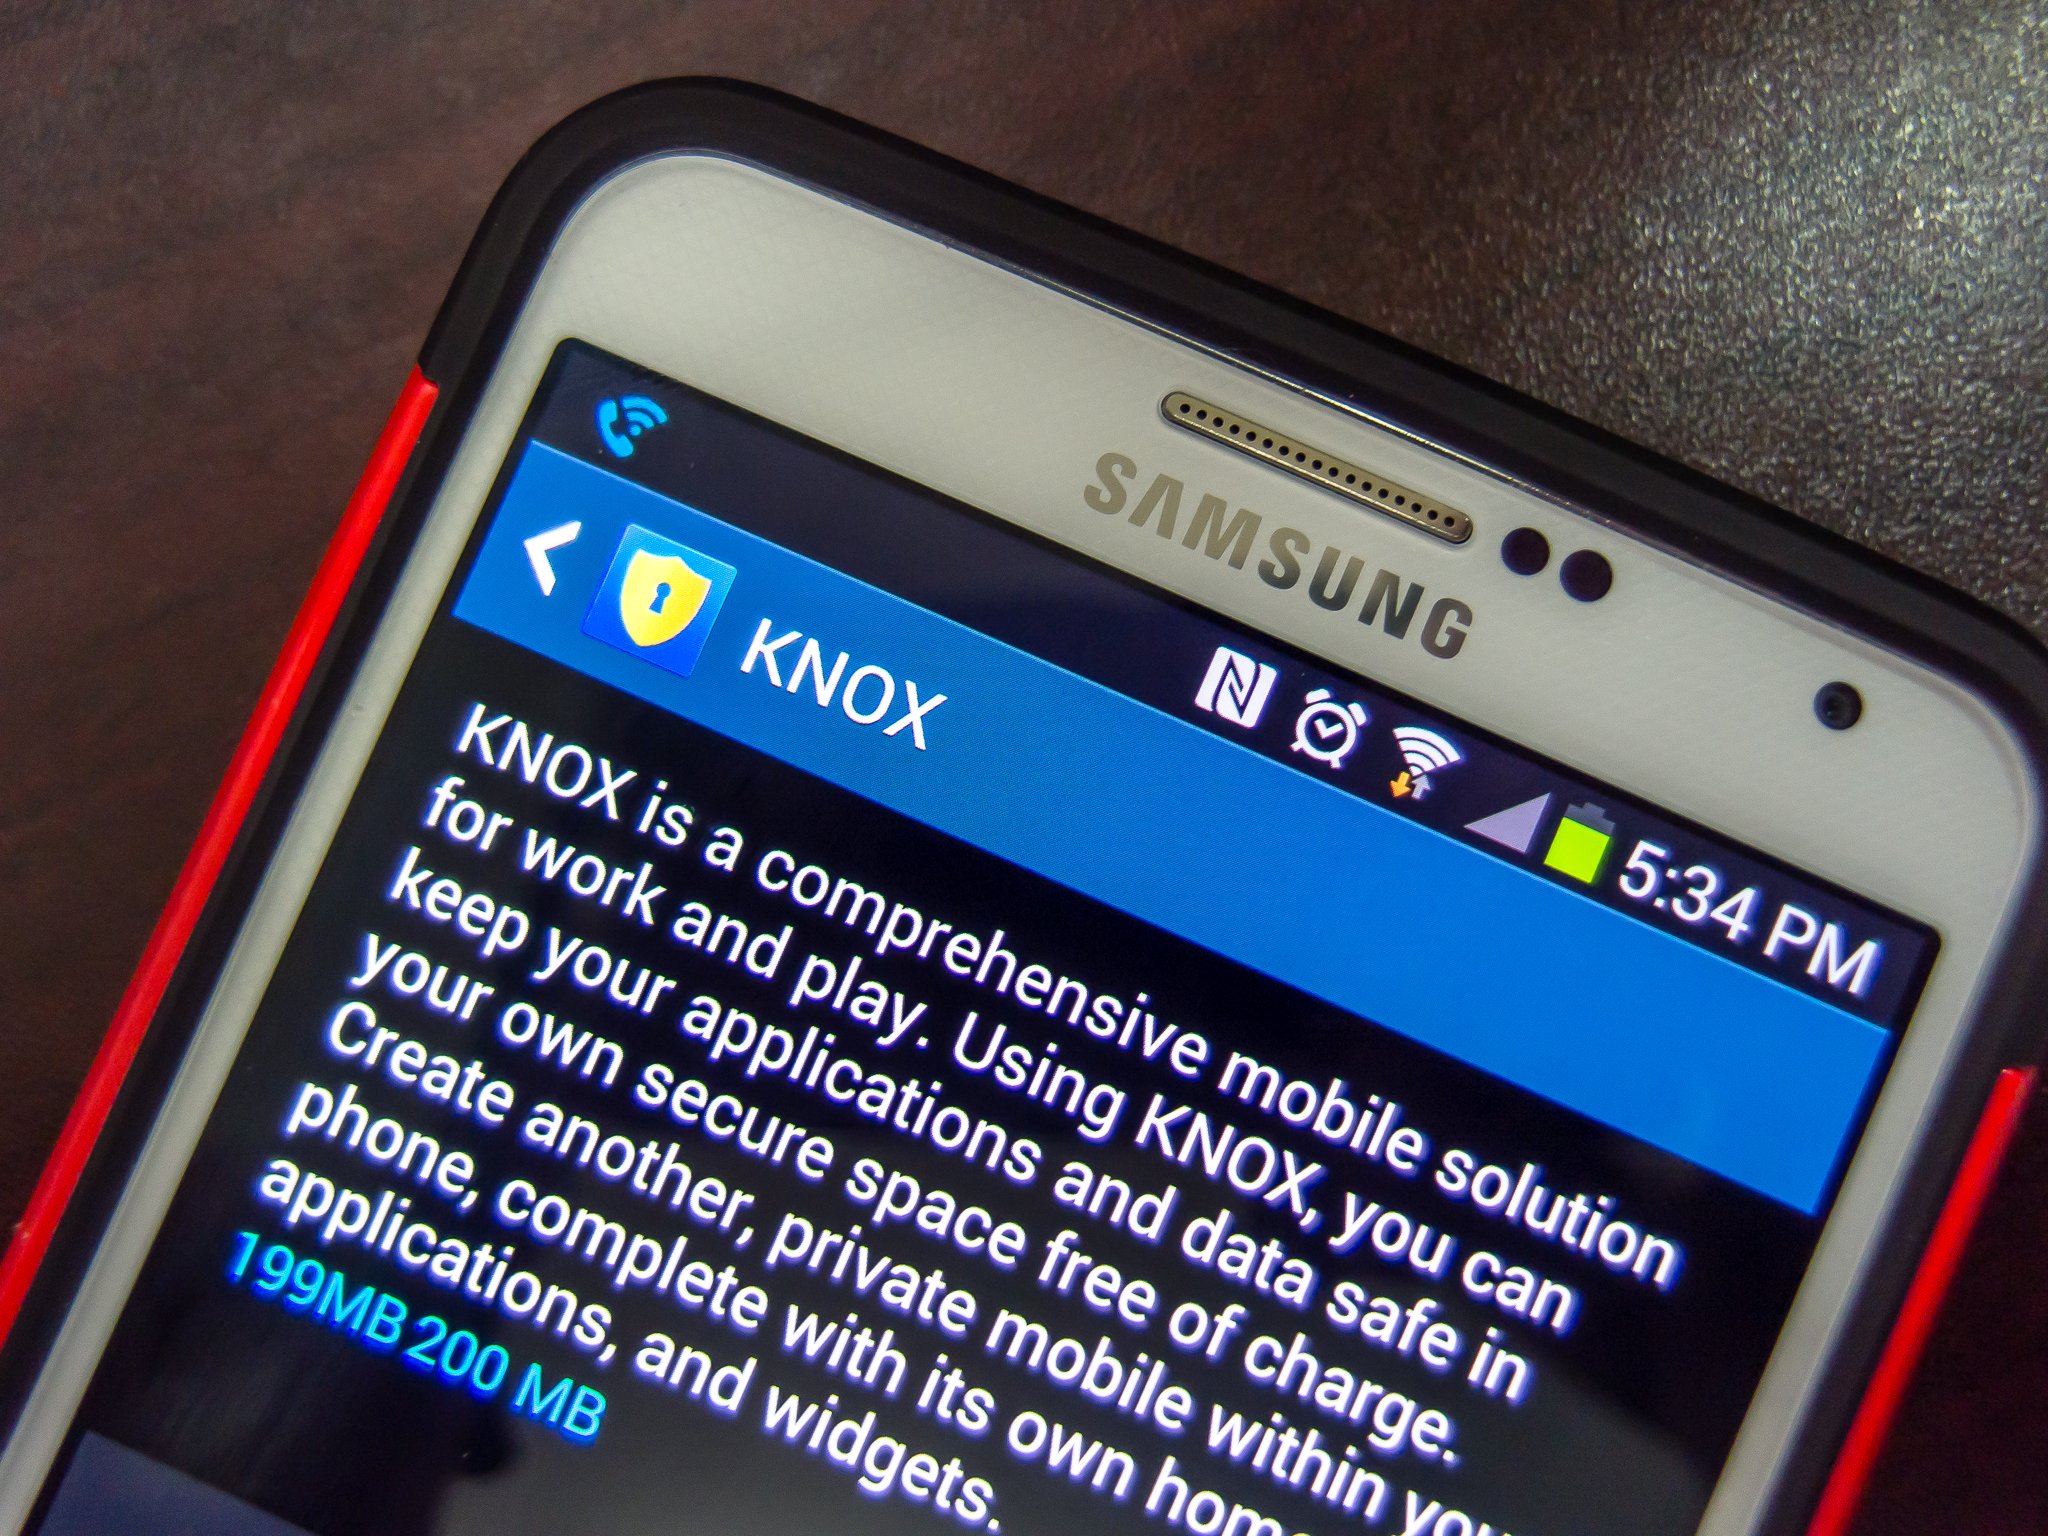 Samsung Galaxy S5 KNOX 2.0